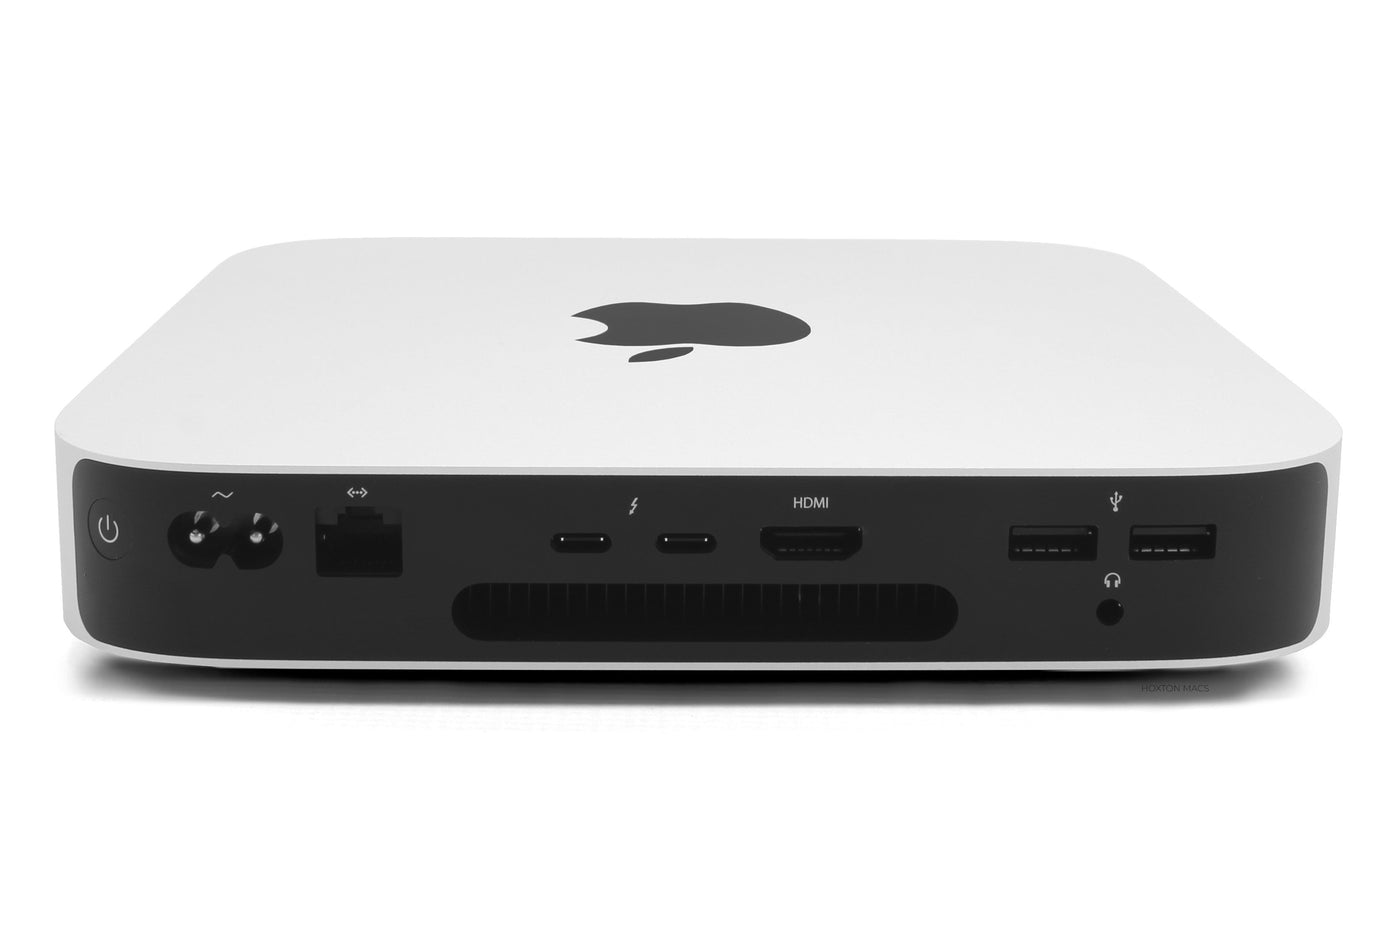 Mac Mini M1 16gb 1TB SSD 2020, AppleCare+